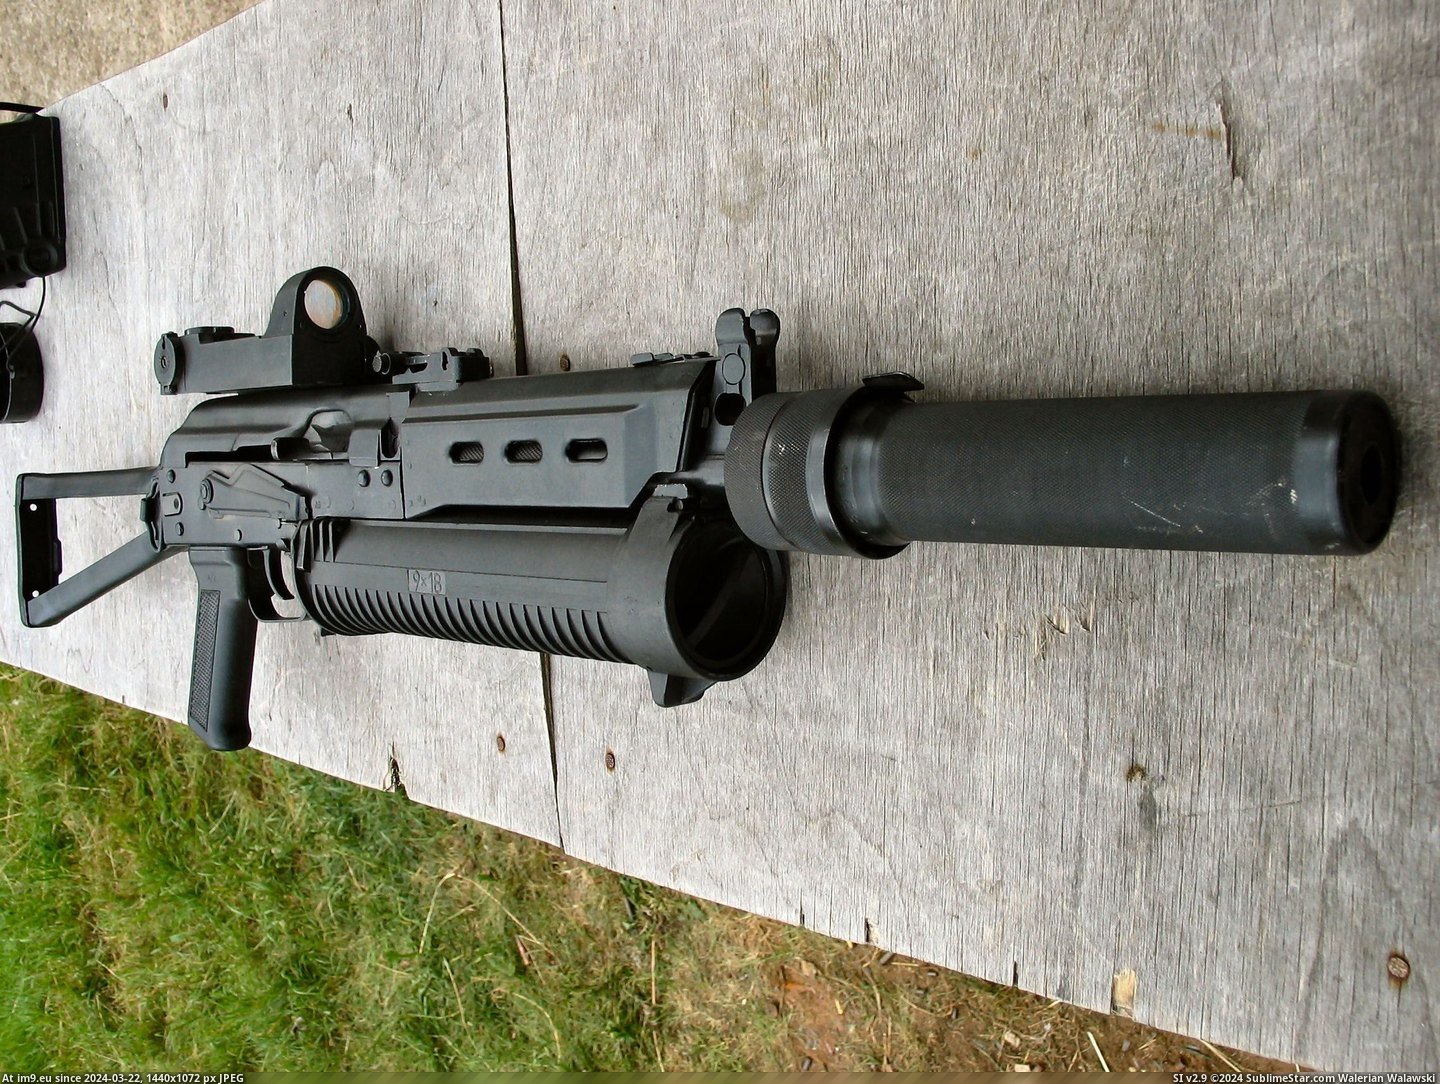 #Gun #Submachine #Bizon PP-19 Bizon Submachine Gun Pic. (Bild von album Rehost))